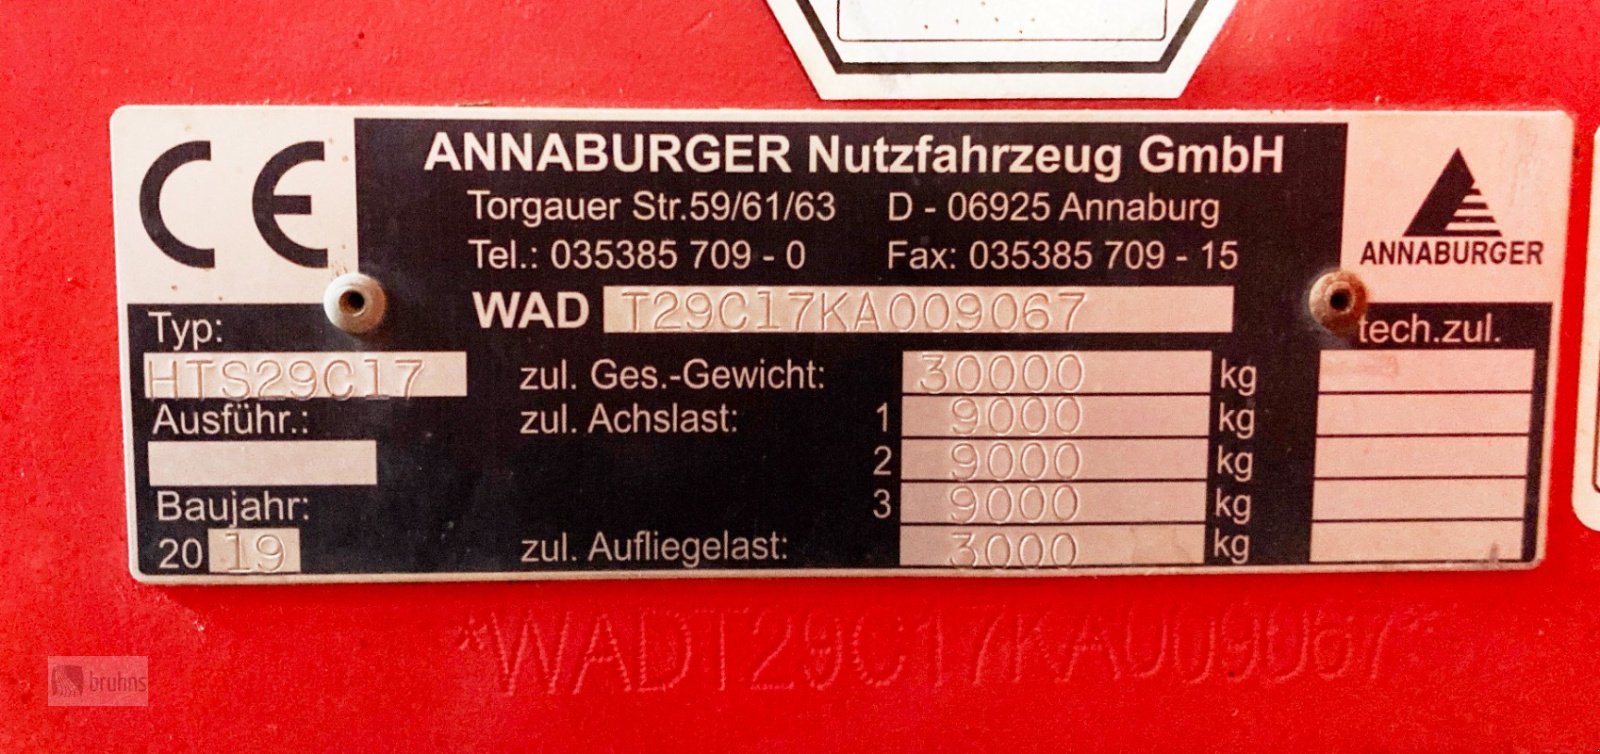 Abschiebewagen типа Annaburger SchubMax Plus HTS 29.17, Gebrauchtmaschine в Karstädt (Фотография 14)